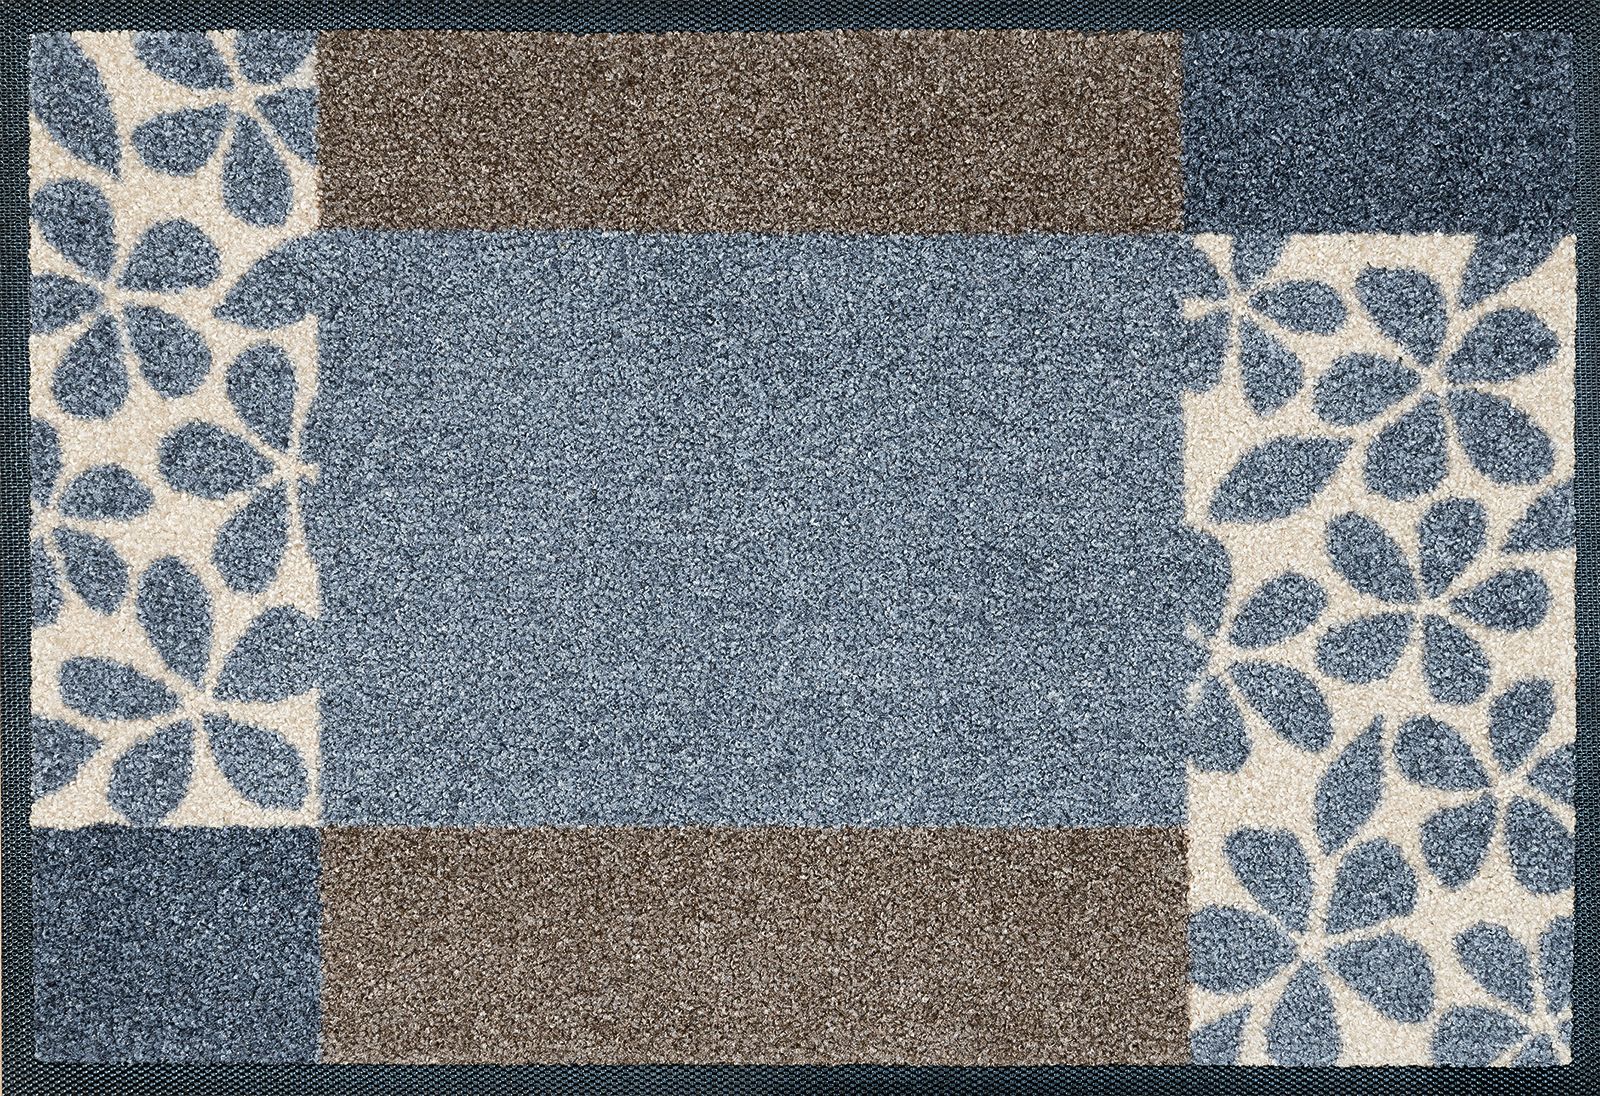 Fußmatte Florita grey, Wash & Dry Interiormatte, 040 x 060 cm, Draufsicht